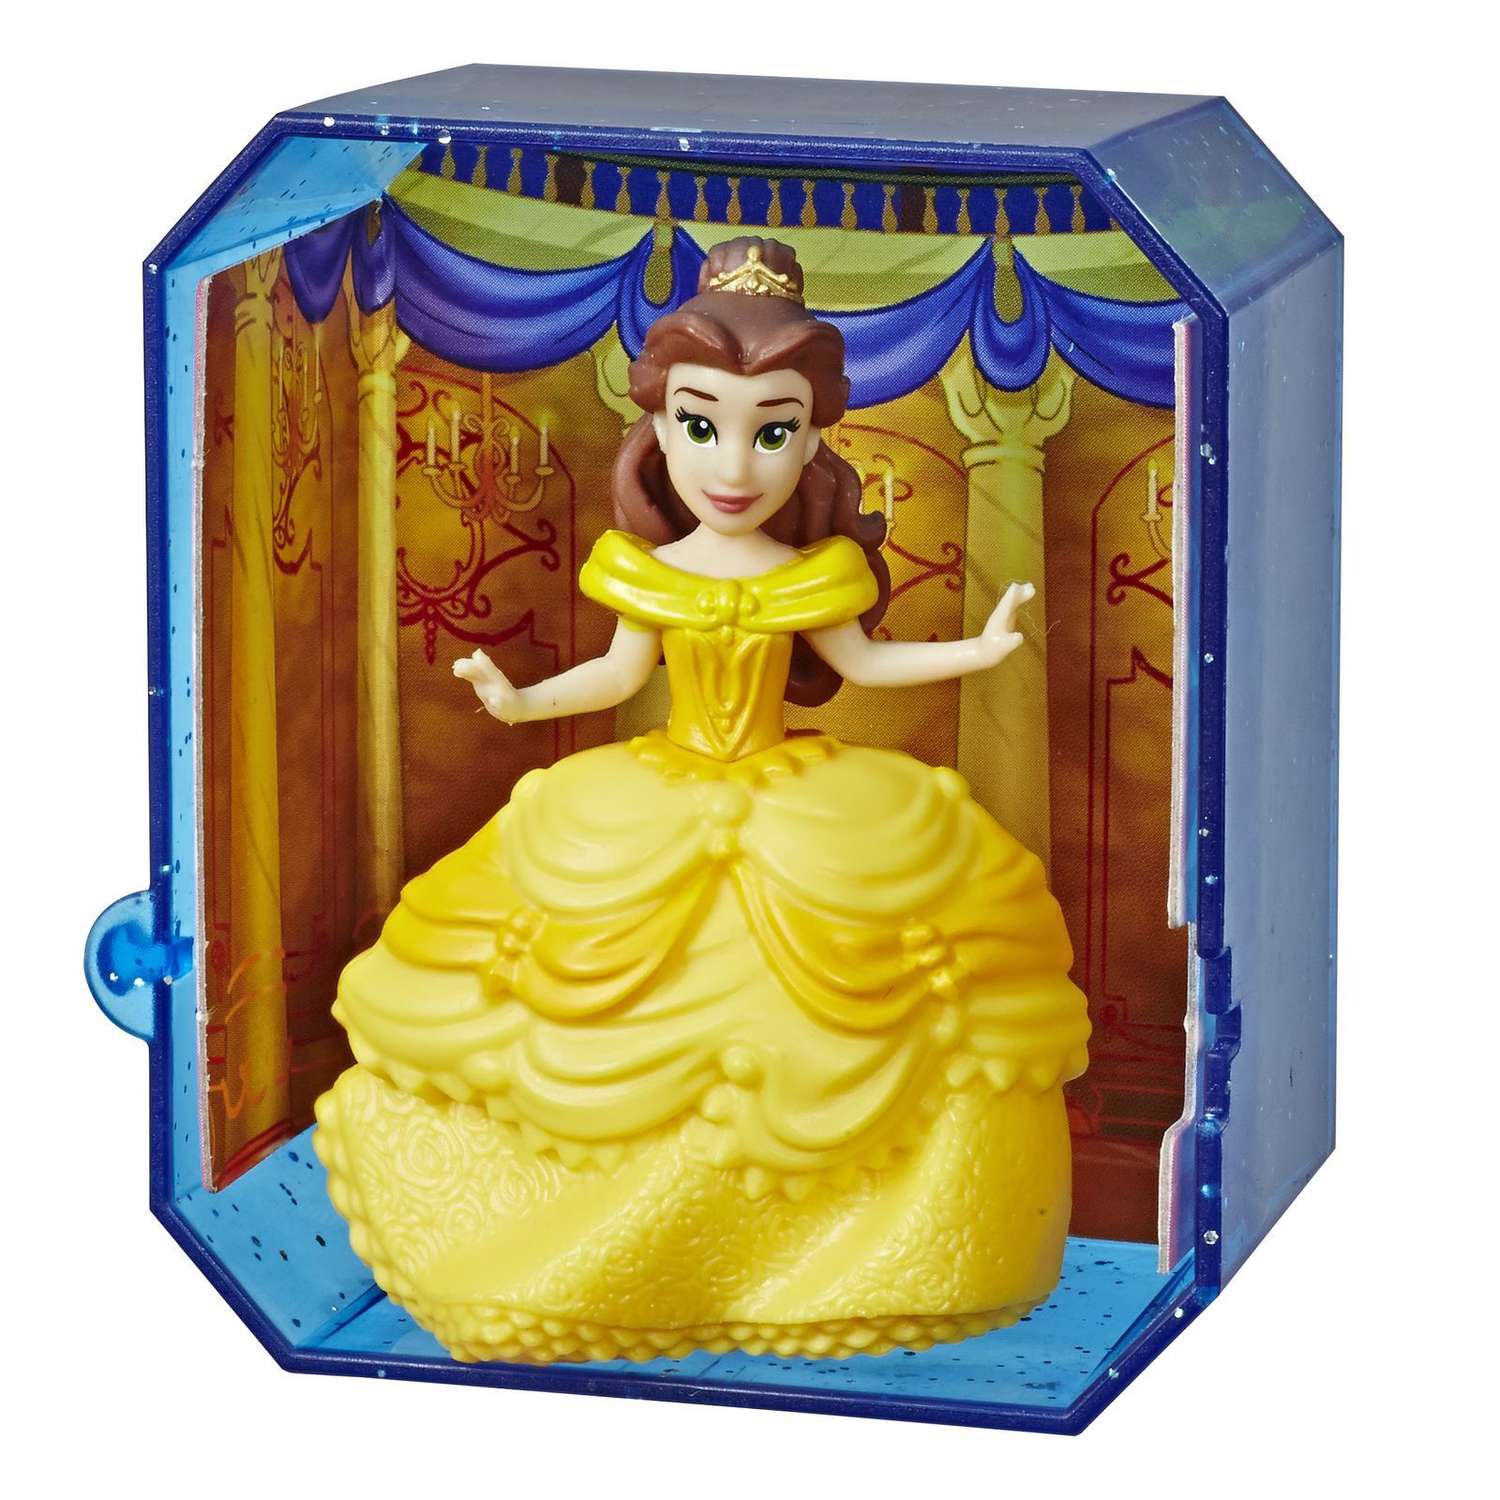 Дисней сюрпризы. Кукла Disney Princess Hasbro в непрозрачной упаковке сюрприз e3437eu4. Фигурки принцессы Дисней Хасбро. Дисней принцессы Хасбро сюрприз. Disney Princess Hasbro в непрозрачной упаковке.